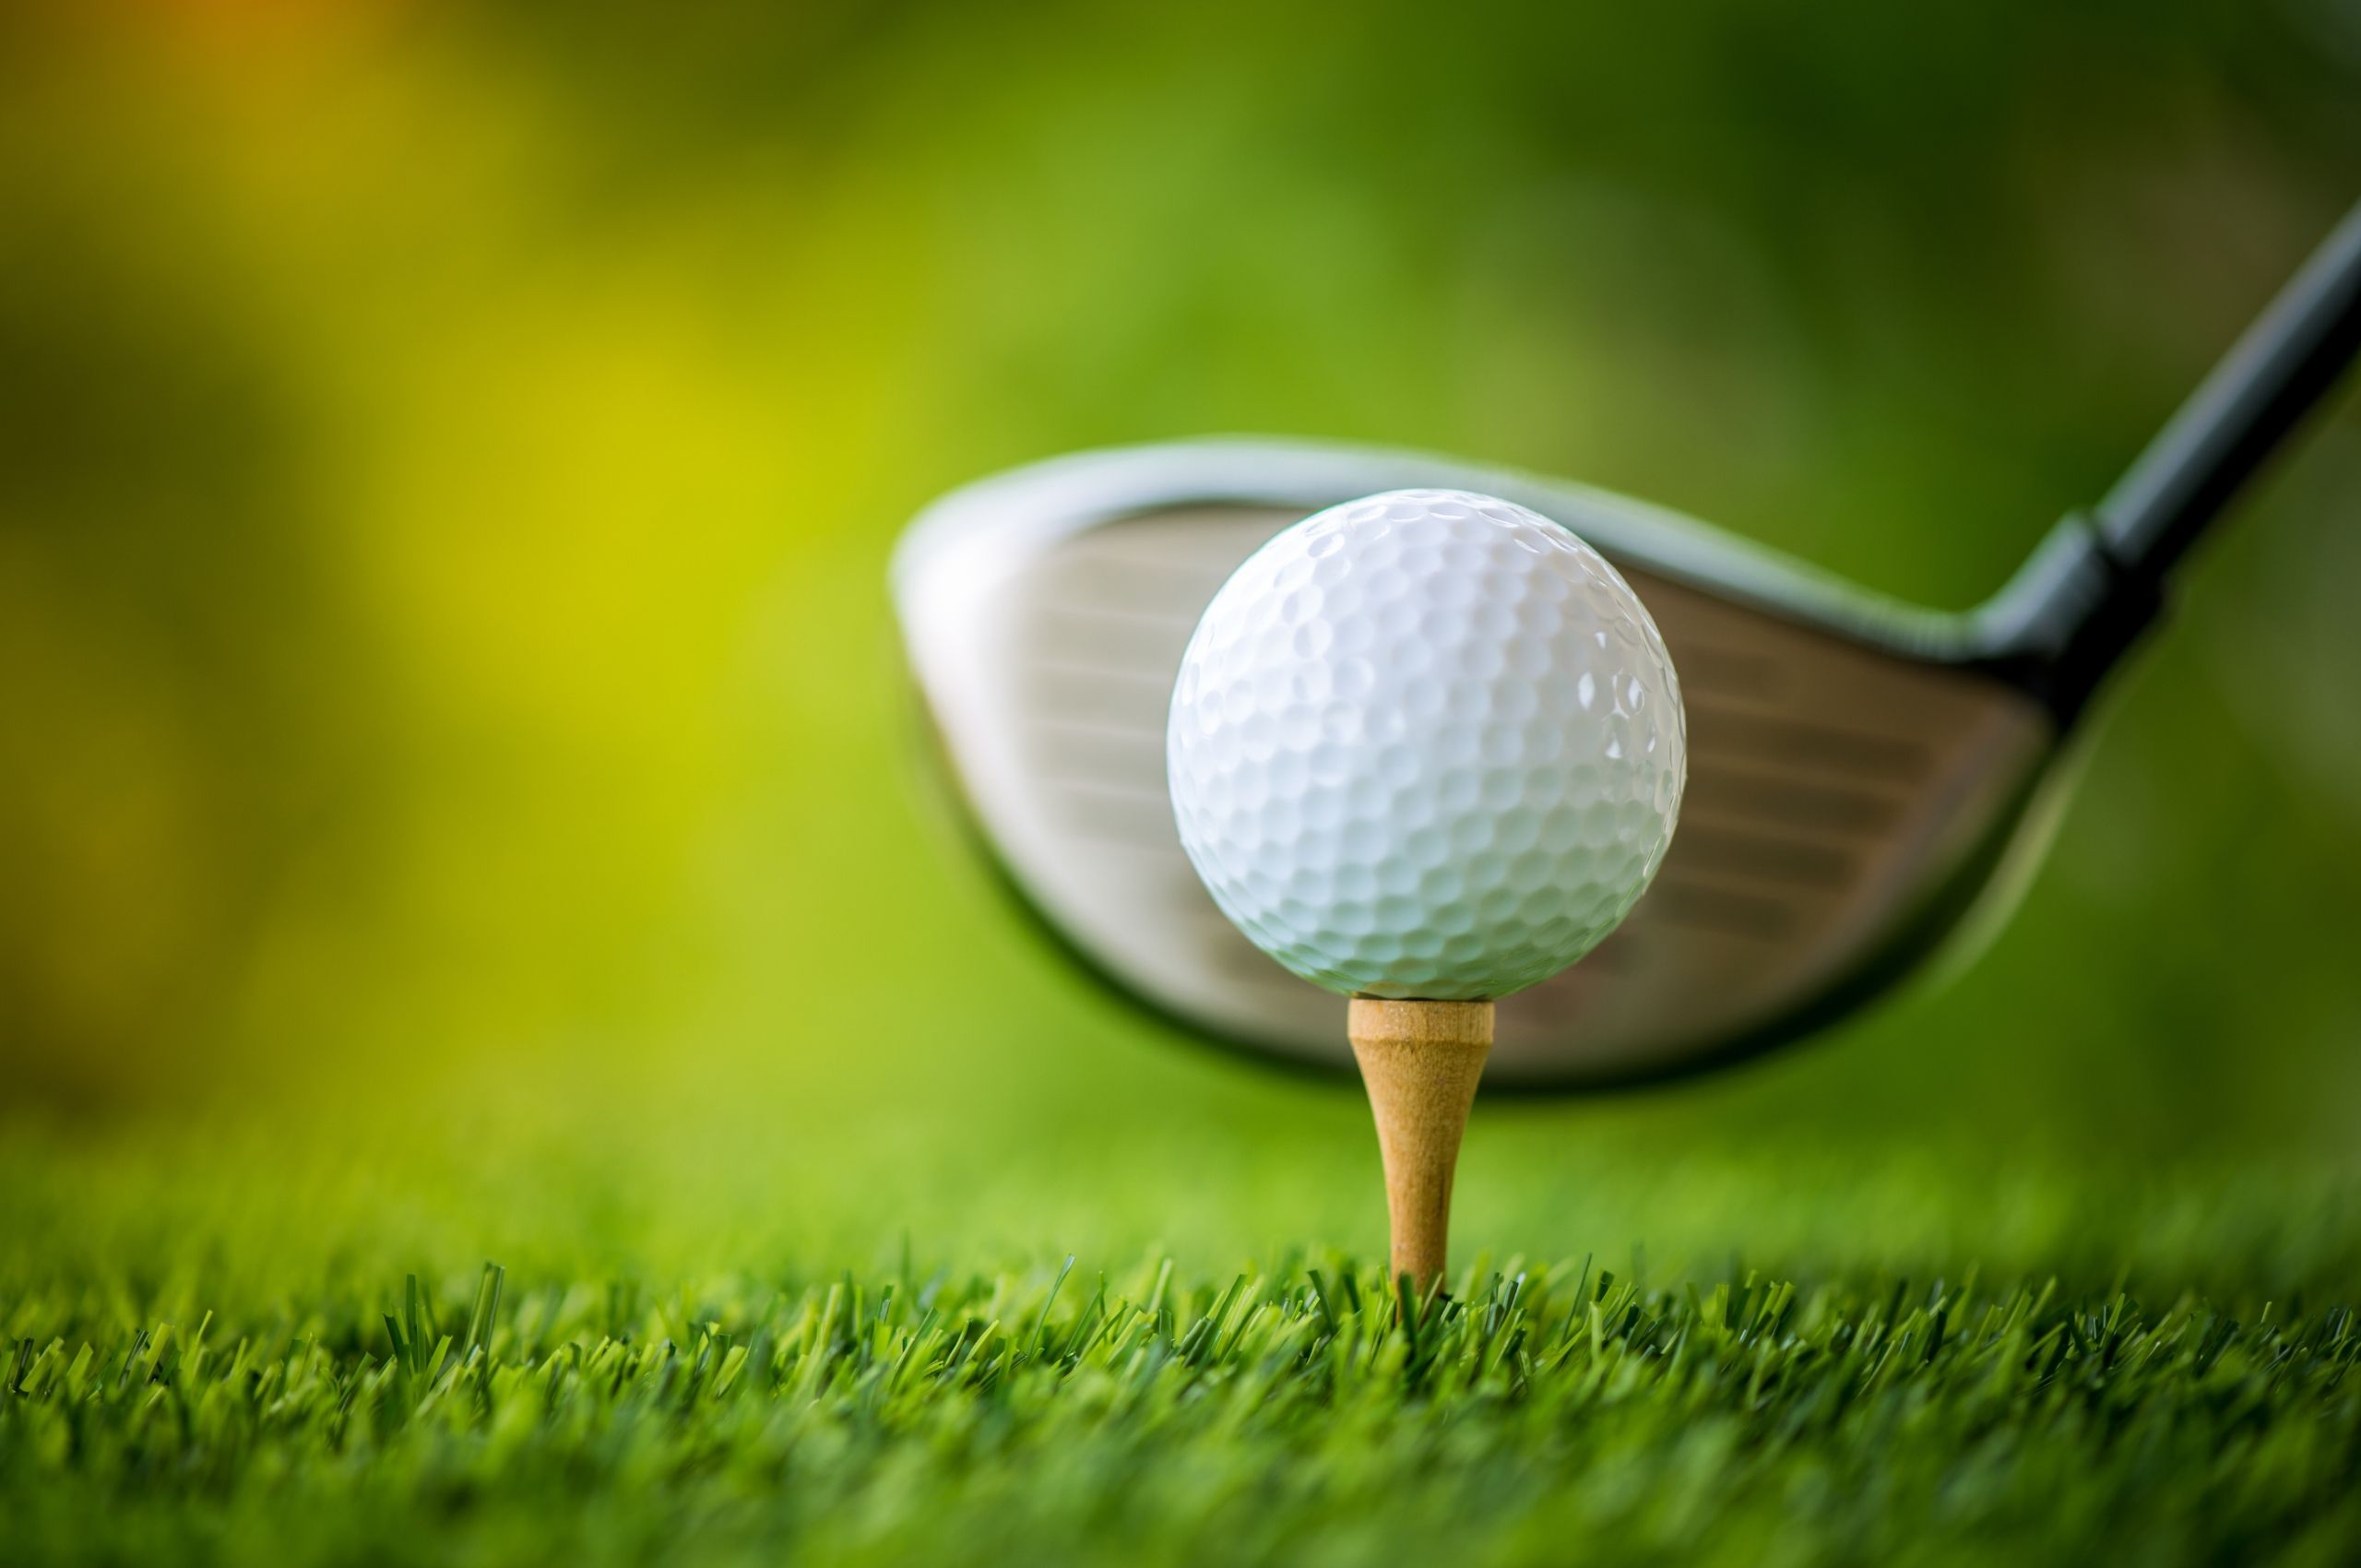 ゴルフ用品買取業者を選ぶ4つのポイント